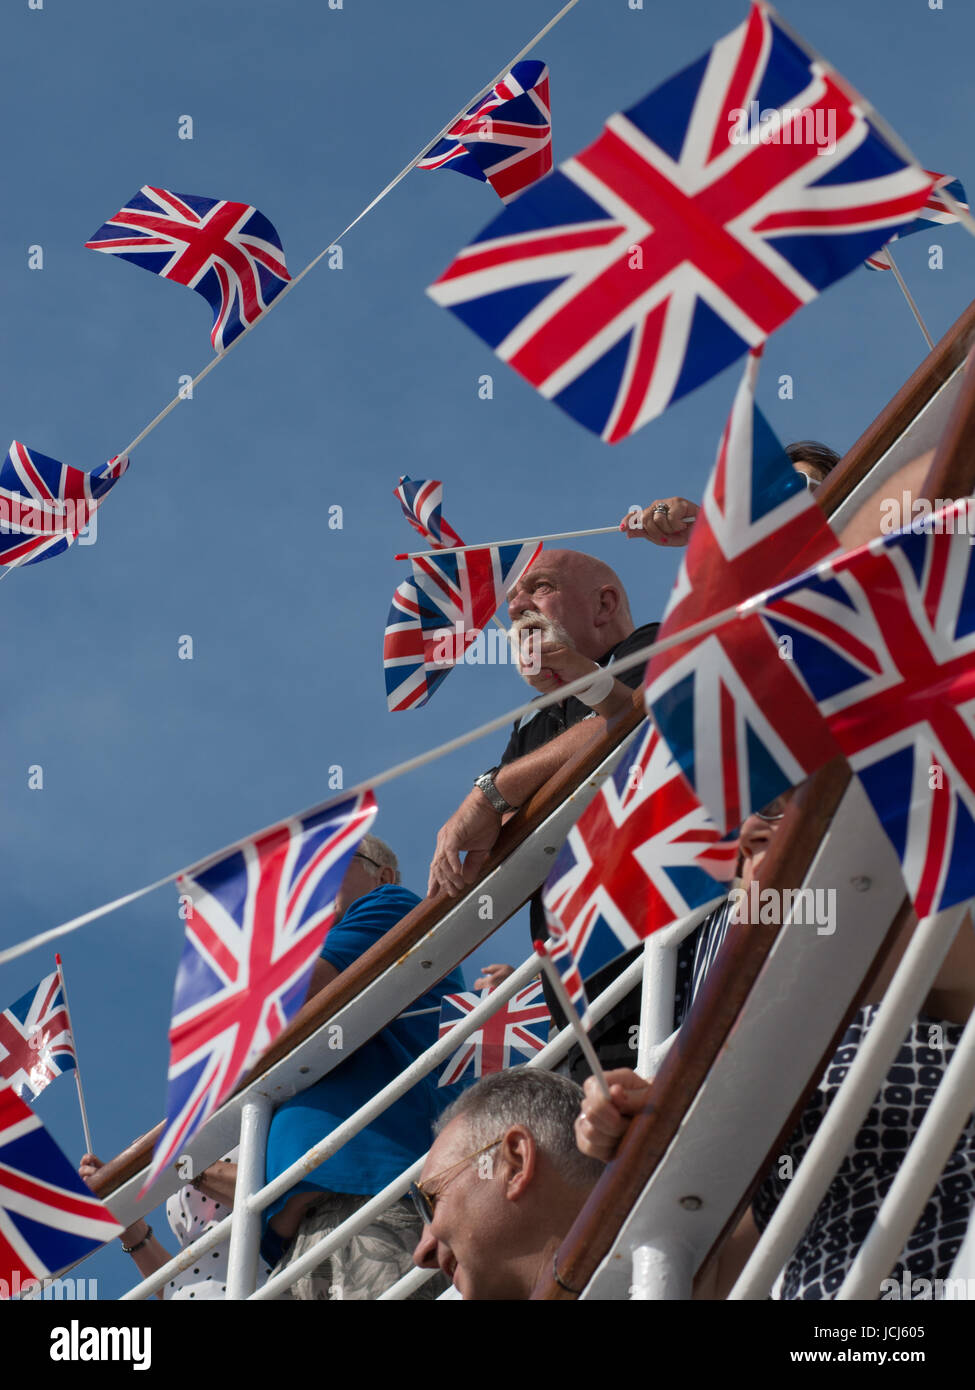 Die Kreuzfahrtpassagiere, die in einem sailaway Partei durch Union Jack Flaggen umgeben. einige Fahnen werden geschwenkt wird. Es ist ein strahlend blauer Himmel. Stockfoto